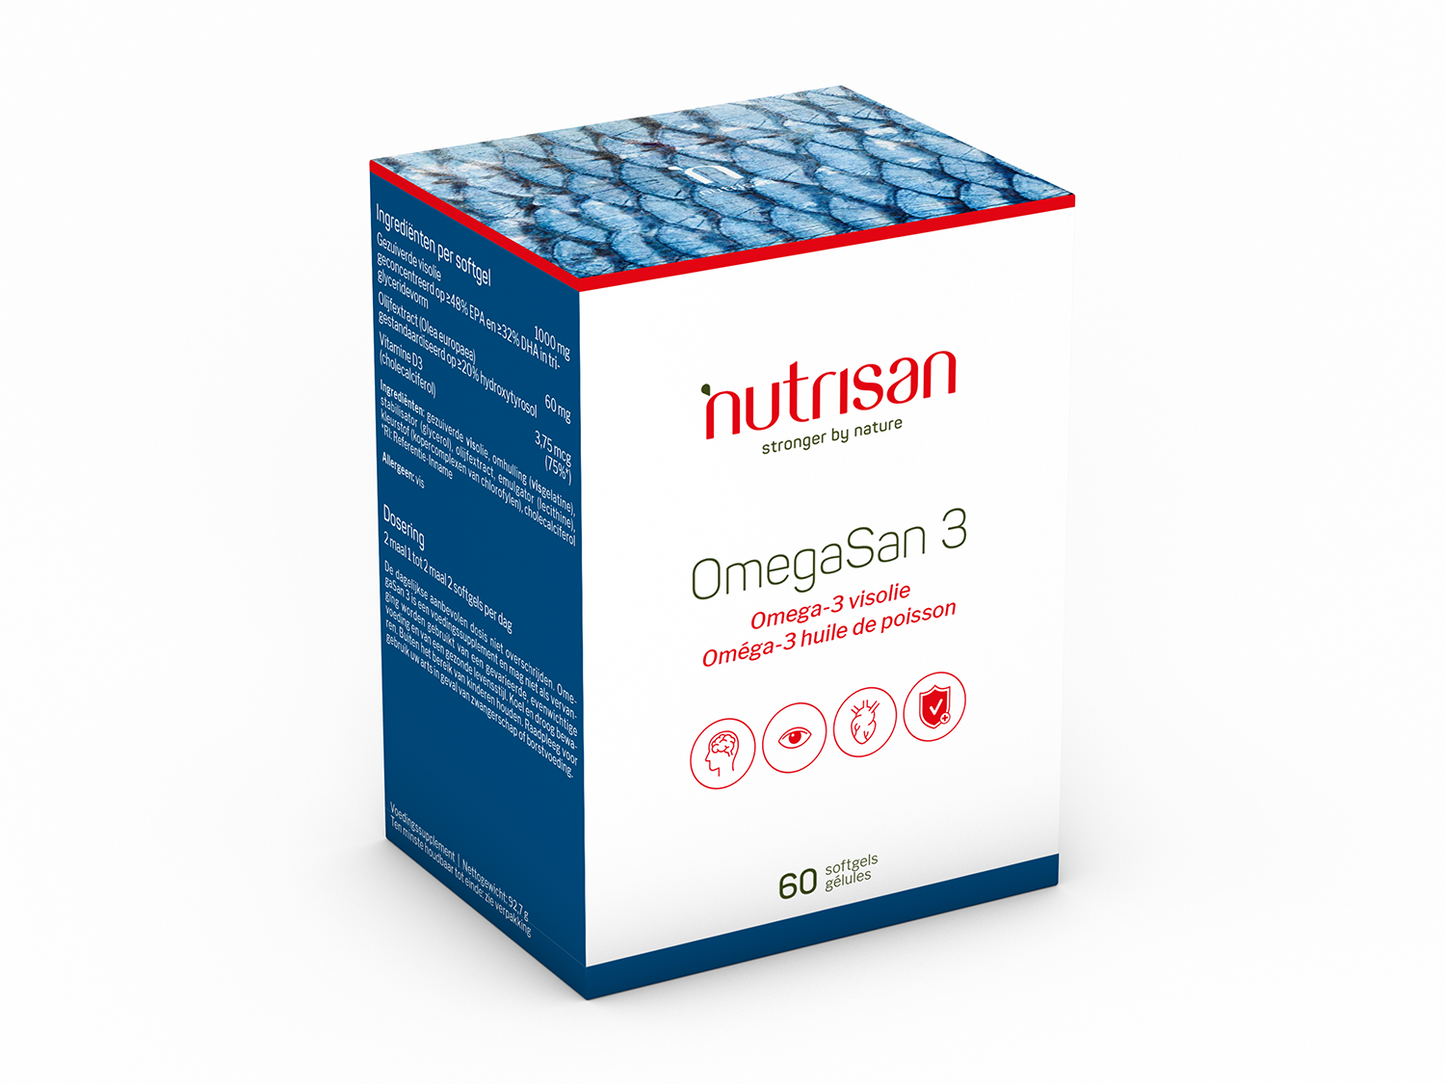 Nutrisan OmegaSan 3 - Omega 3 - Supplement voor hart, hersenen en ogen